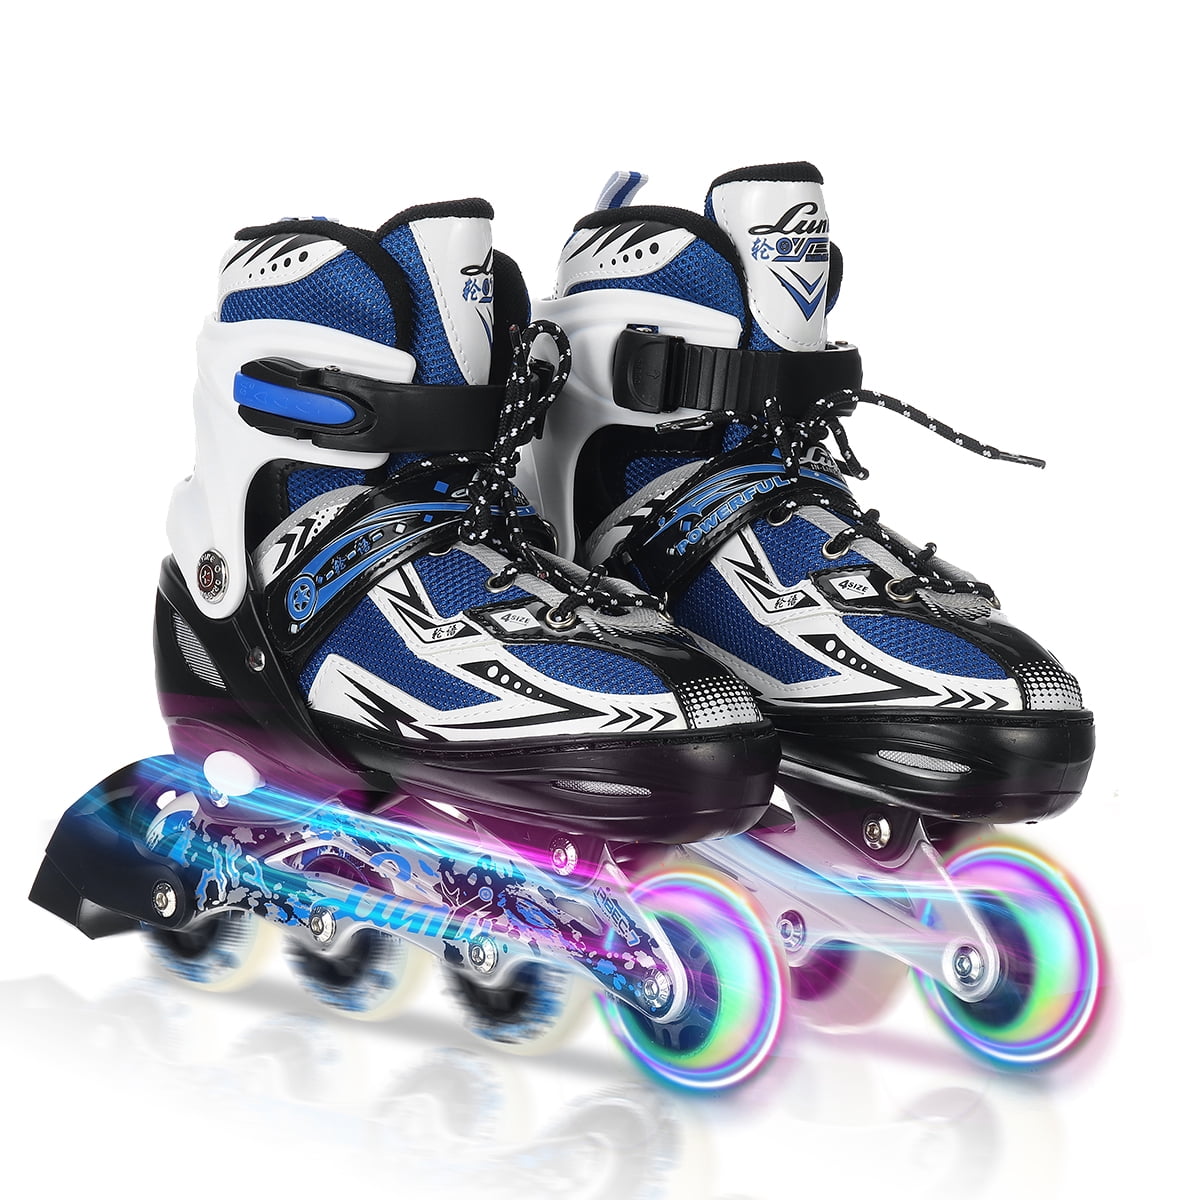 Details about   Inline Skates Adjustable Roller Skates Blade Light Up Flashing Skates Wheels| 